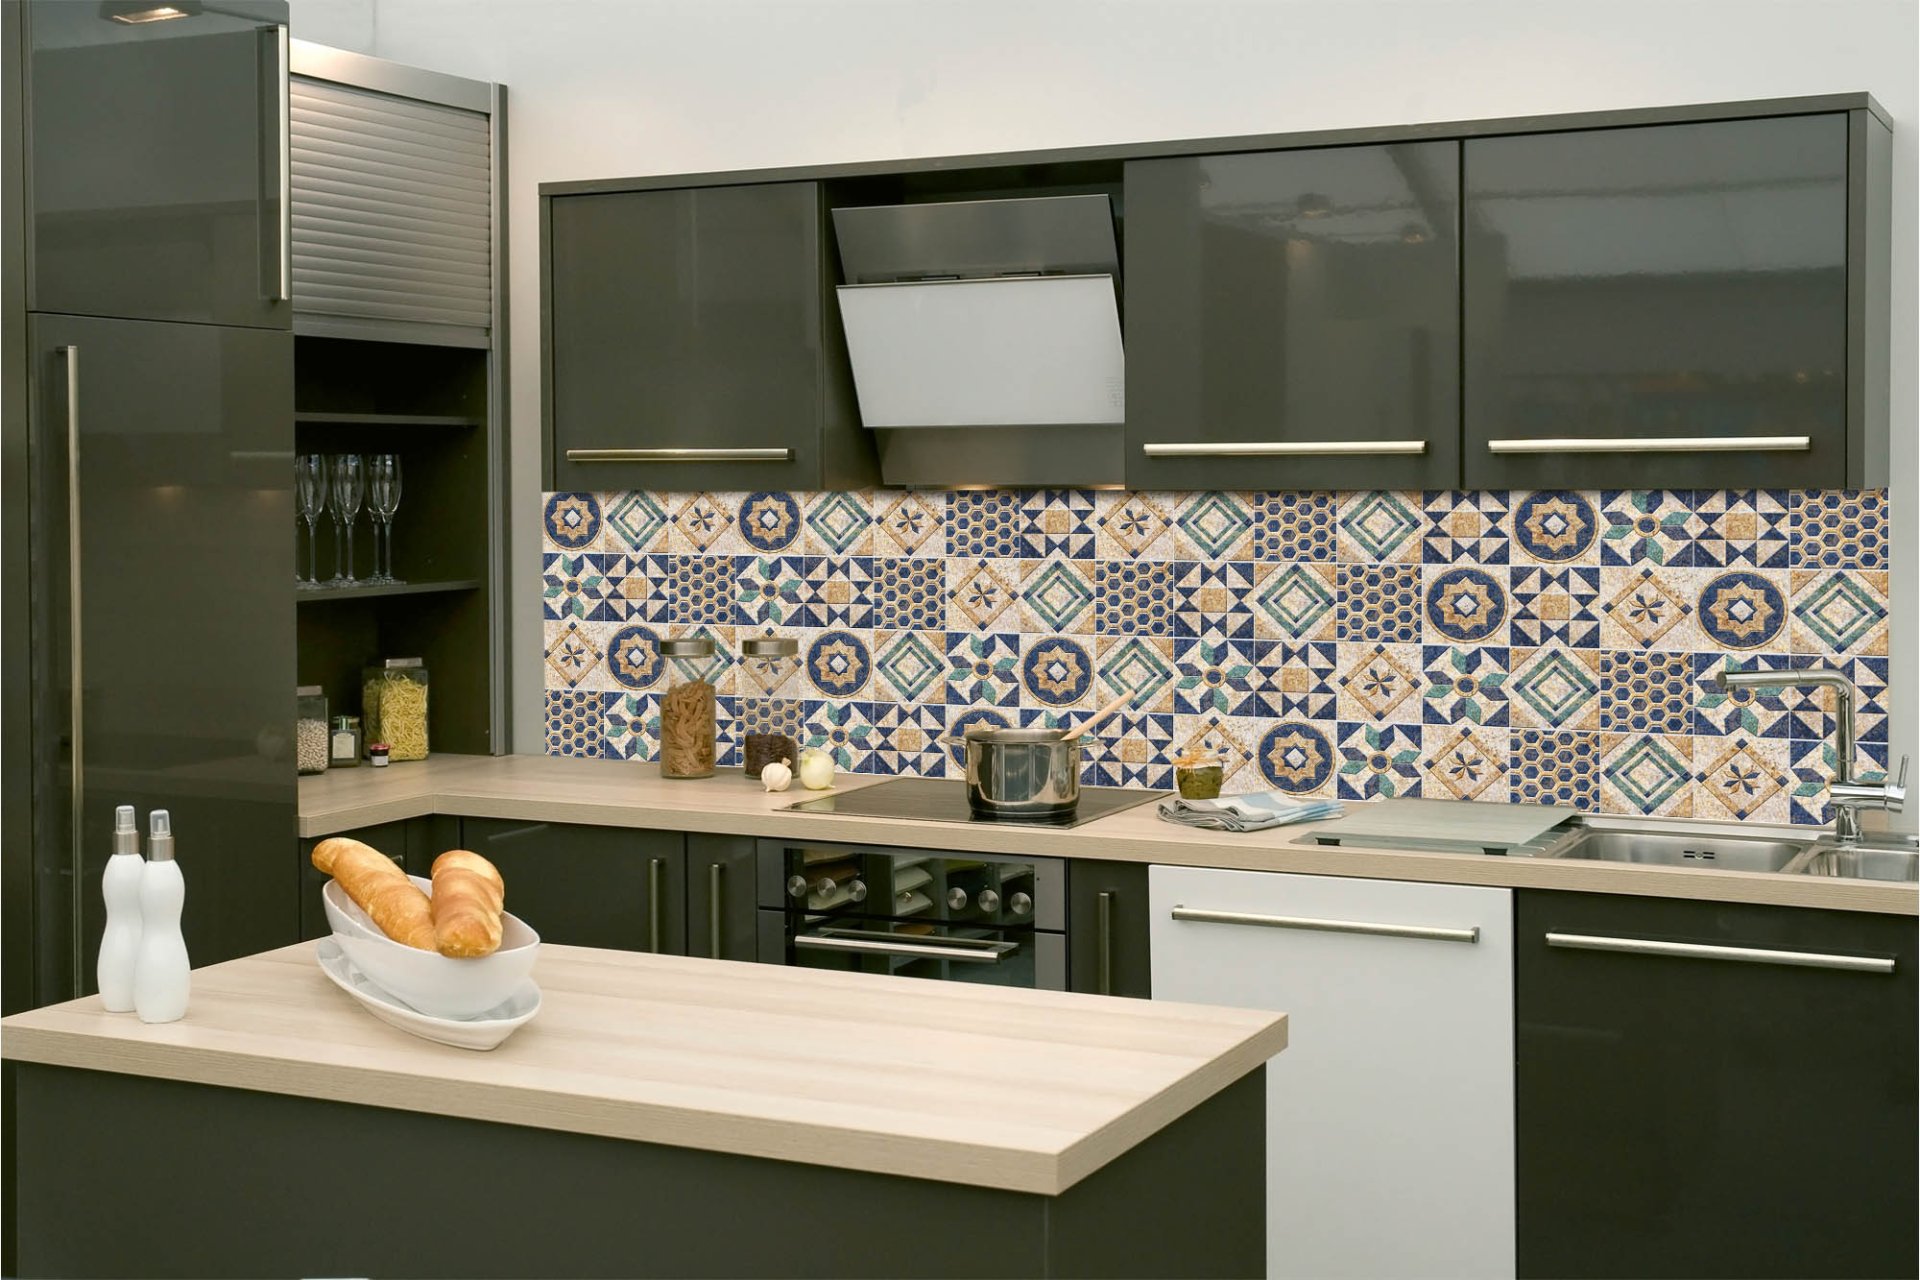 Samolepicí fototapeta na kuchyňskou linku Modré retro kachličky 260 x 60 cm / KI-260-165 / Fototapety do kuchyně Dimex